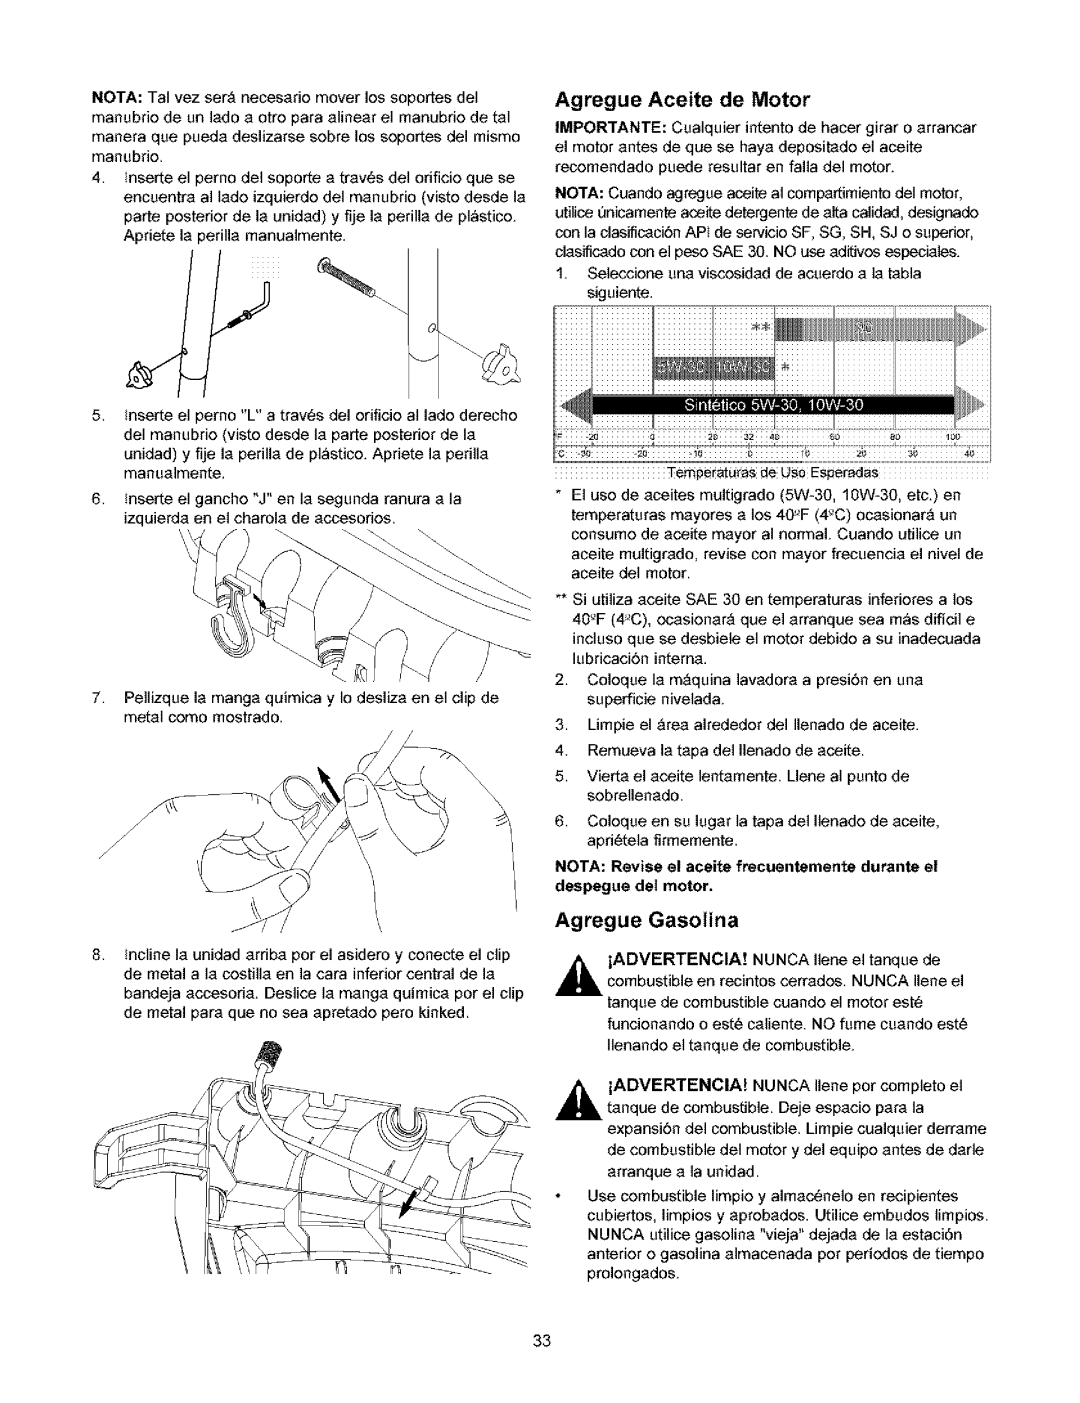 Craftsman 580.753 Agregue Aceite de Motor, Agregue Gasotina, NOTA: Revise el aceite frecuentemente durante el, Advertencia 